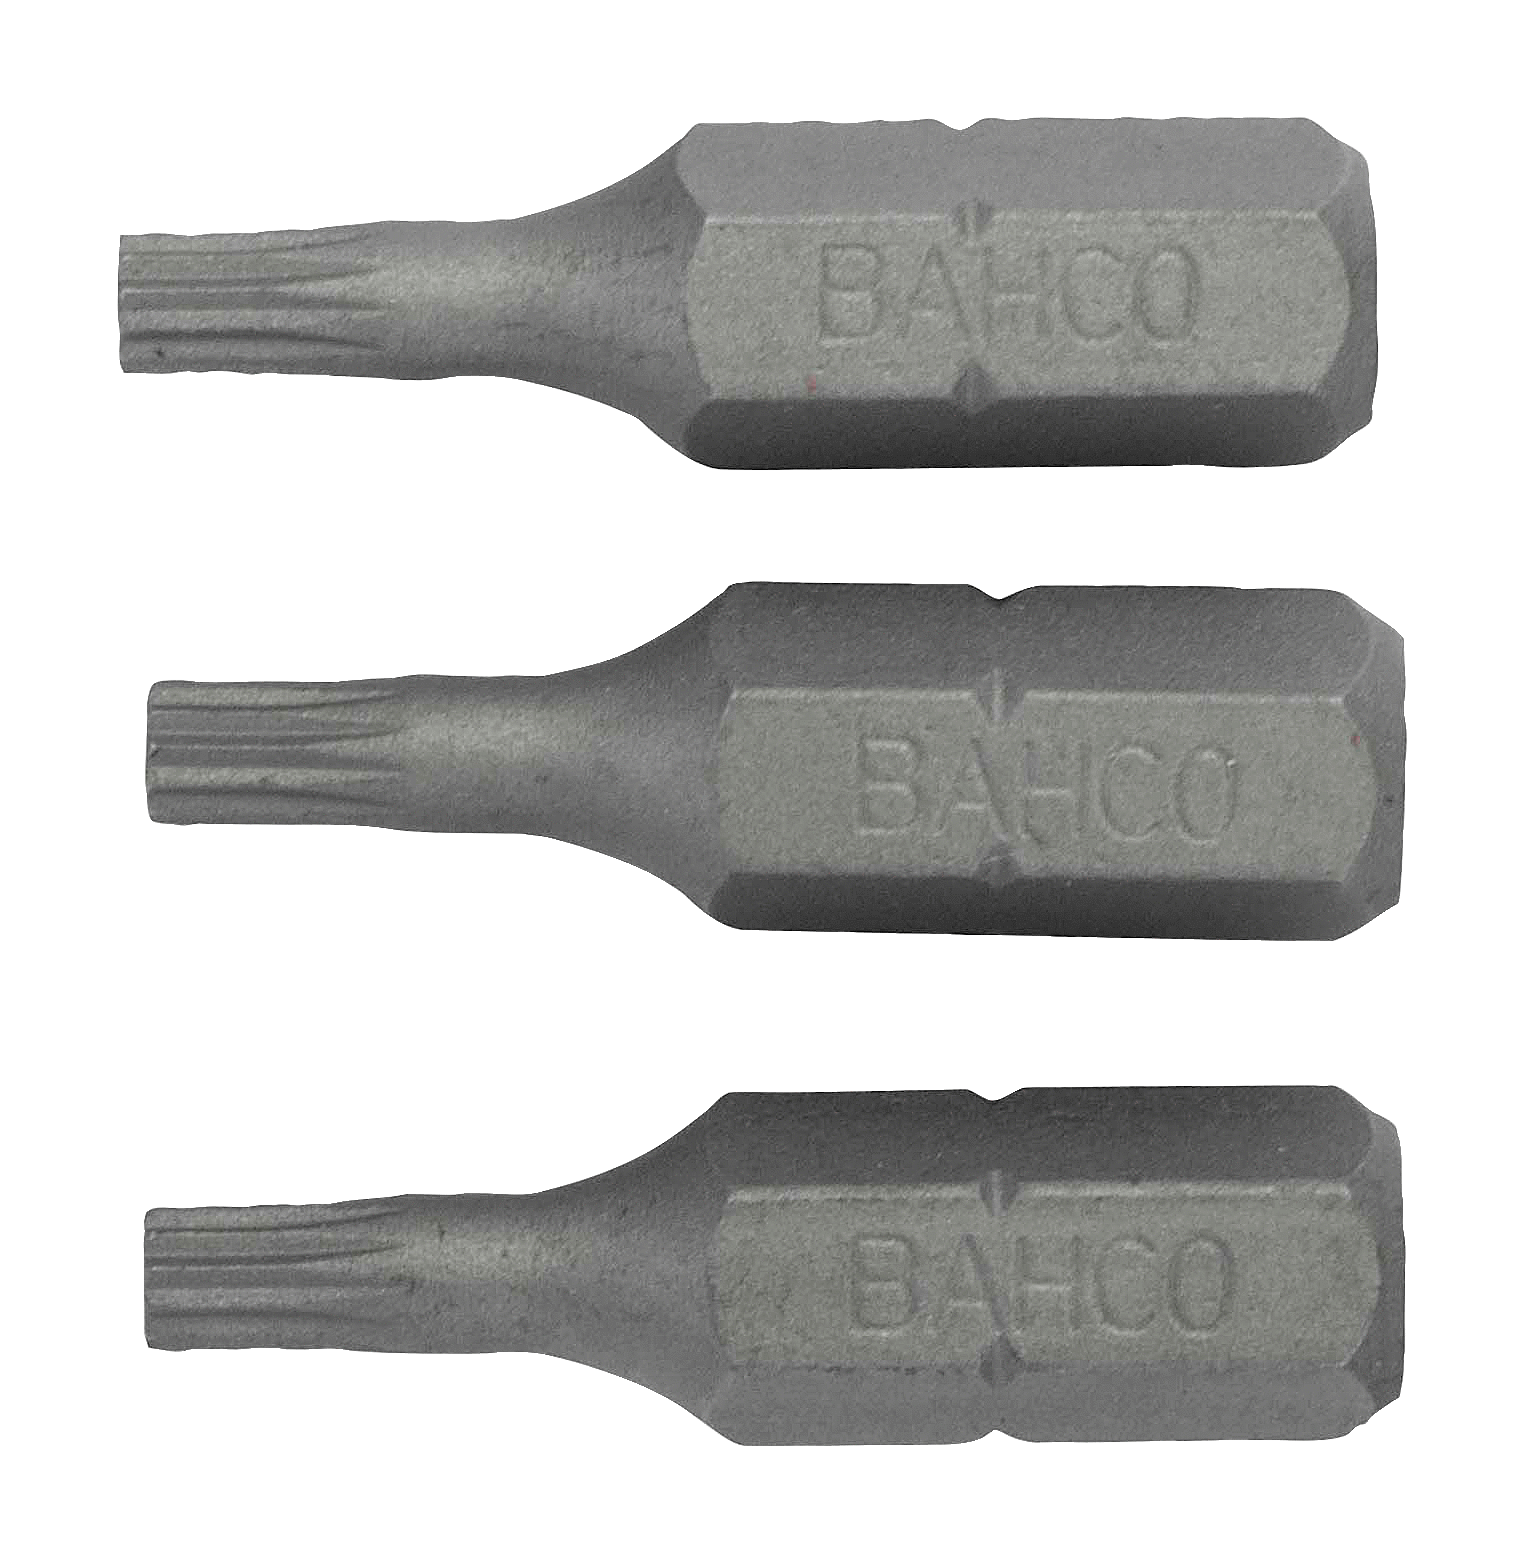 картинка Стандартные биты для отверток XZN, 25 мм BAHCO 59S/M3-3P от магазина "Элит-инструмент"